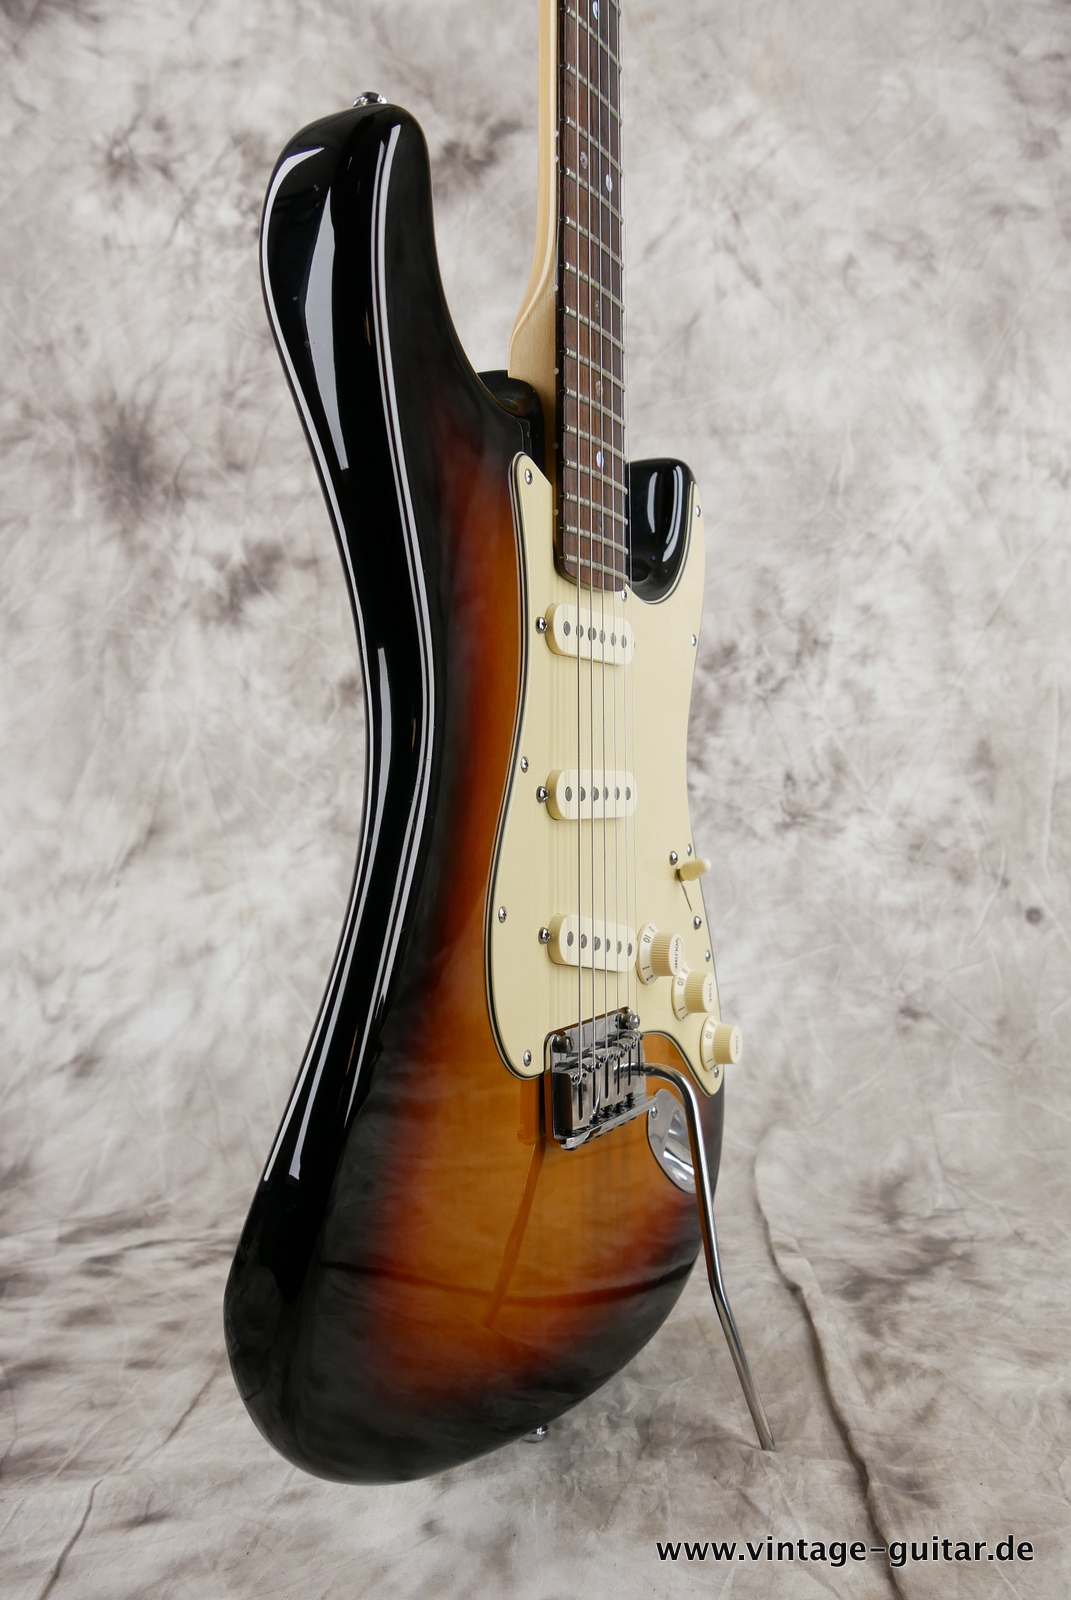 Fender_Startocaster_American_Deluxe_sunburst_samarium-cobalt-noiseless_tremolo_2005-009.JPG